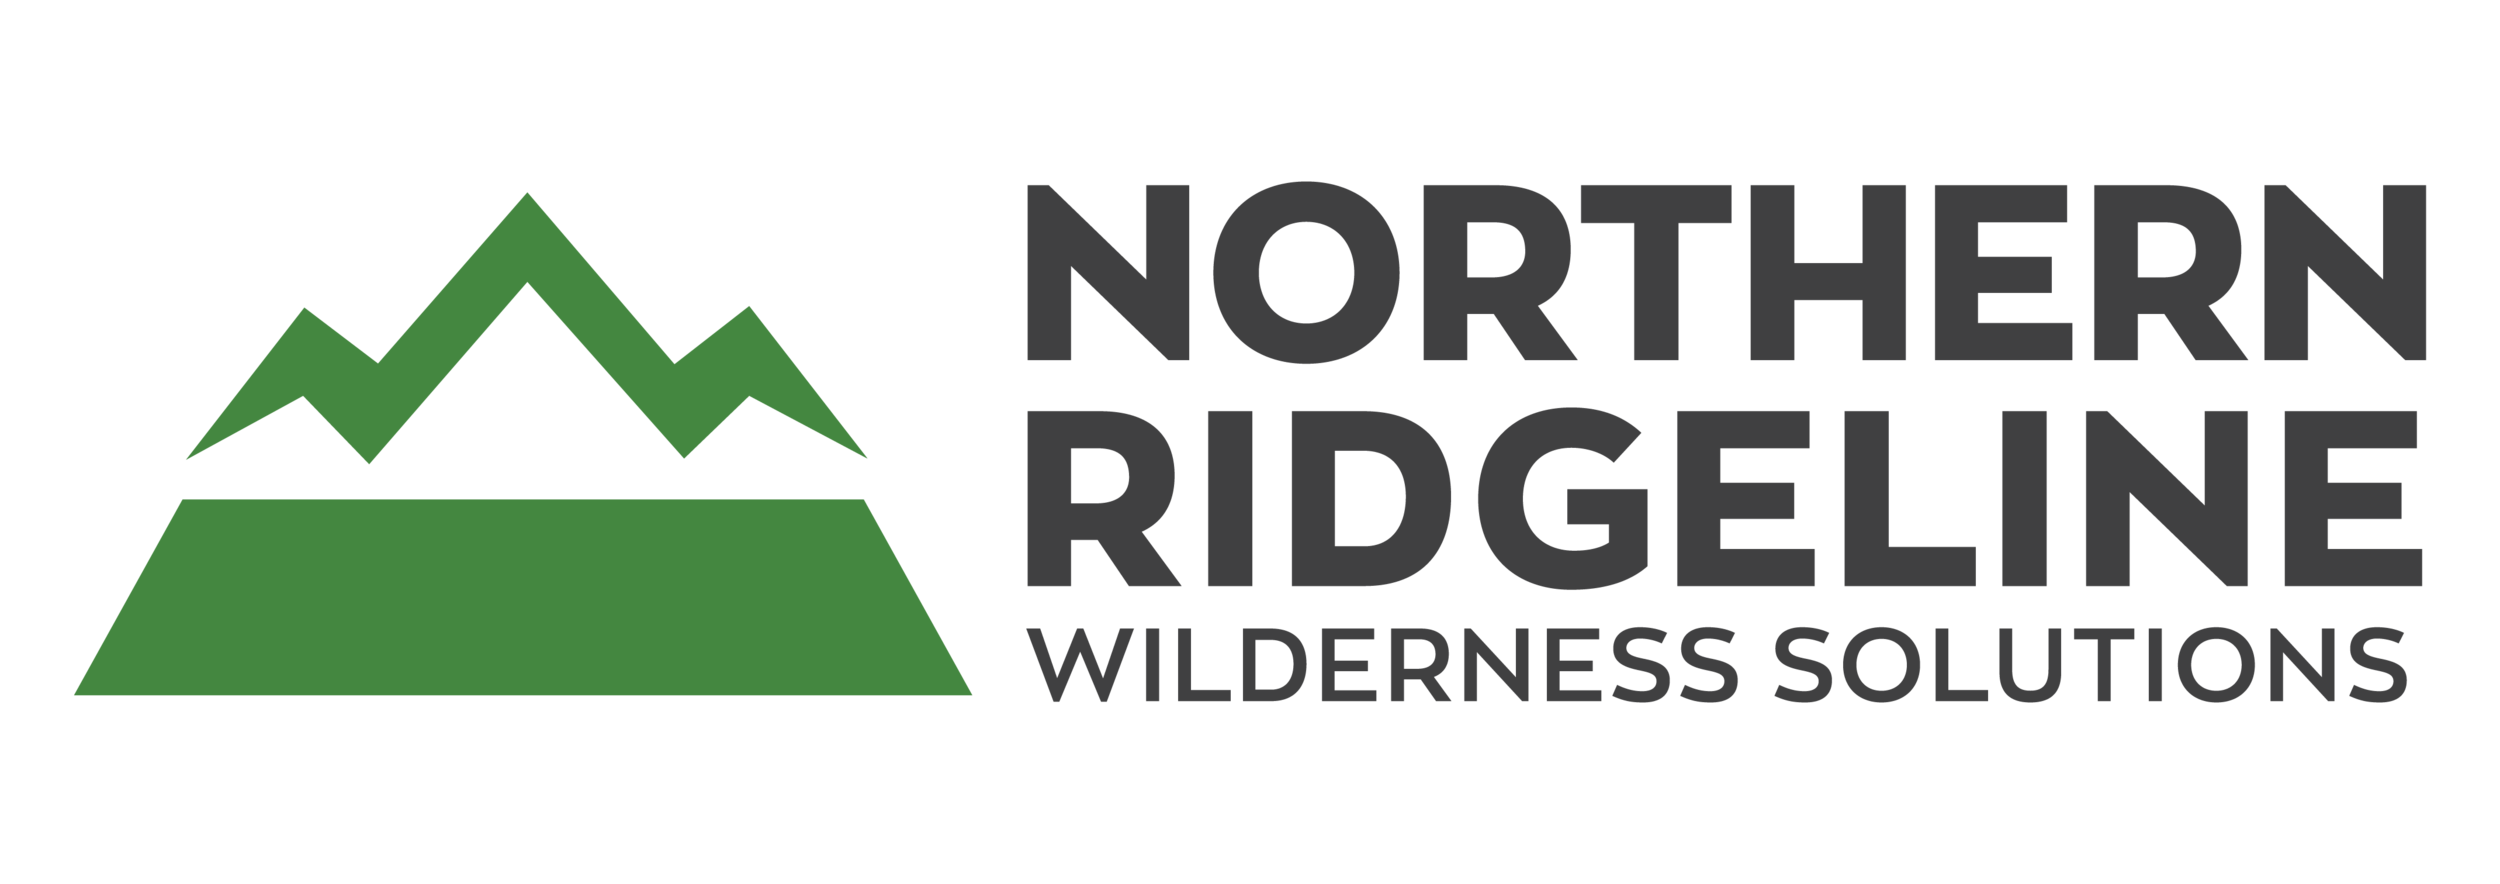 Northern Ridgeline